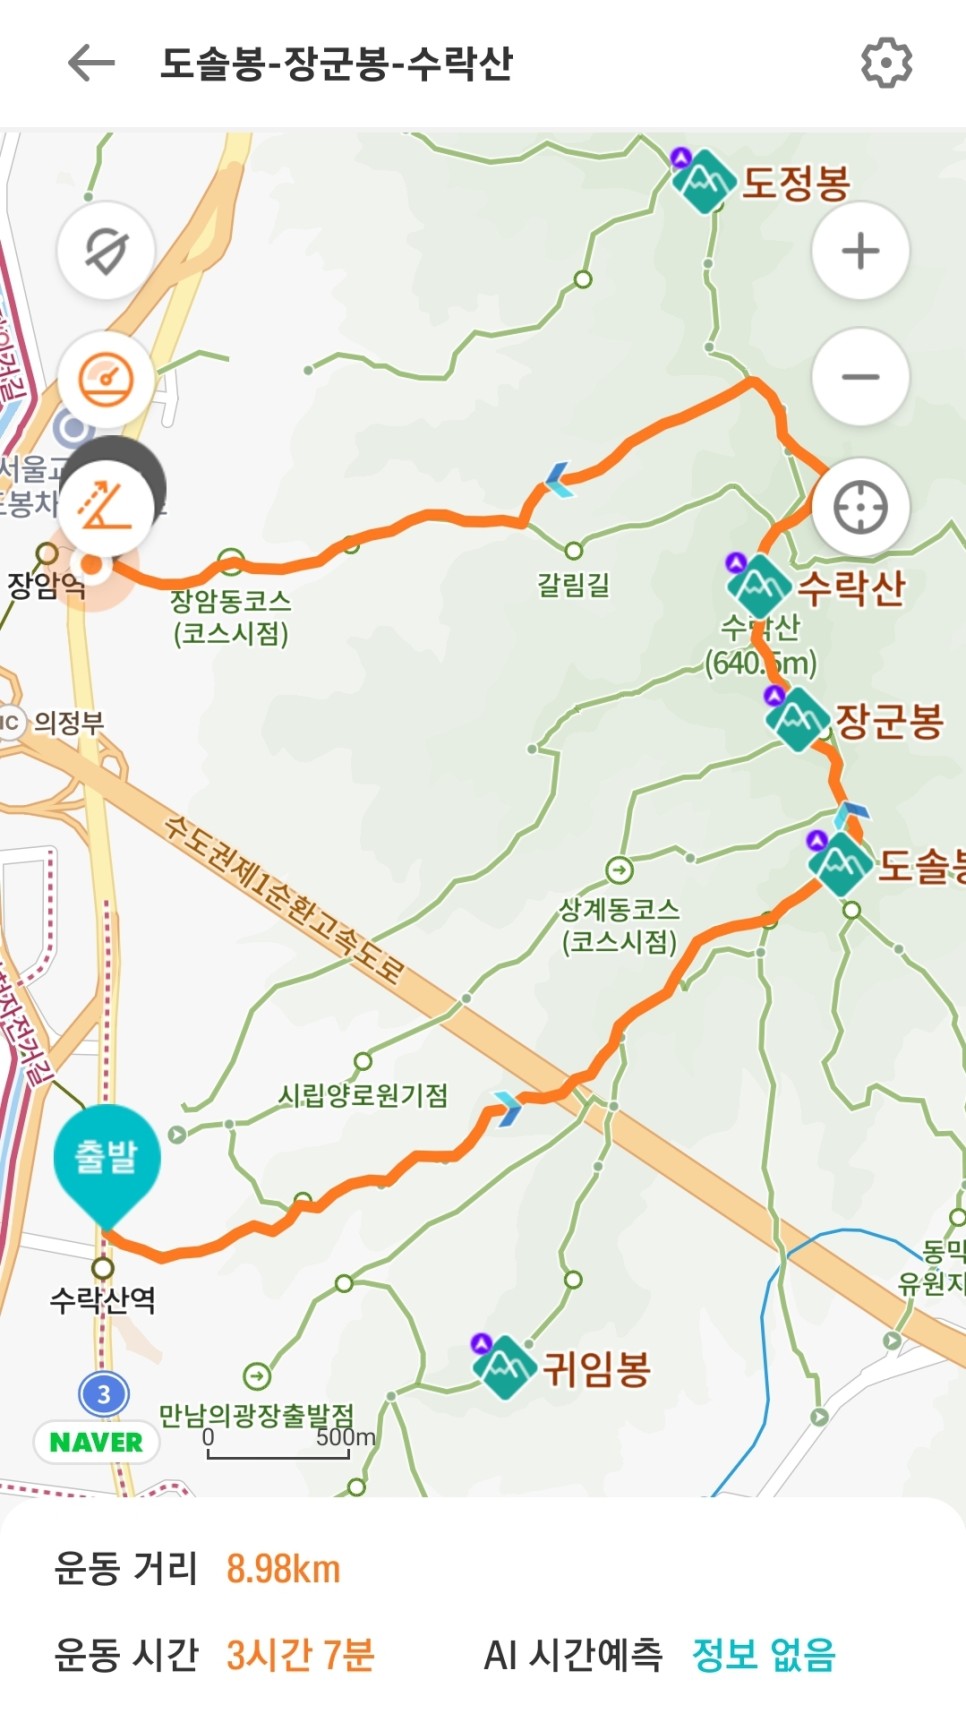 가볍게 수락산 한바퀴(Feat. 가장 편안한 코스, '23.11.12)